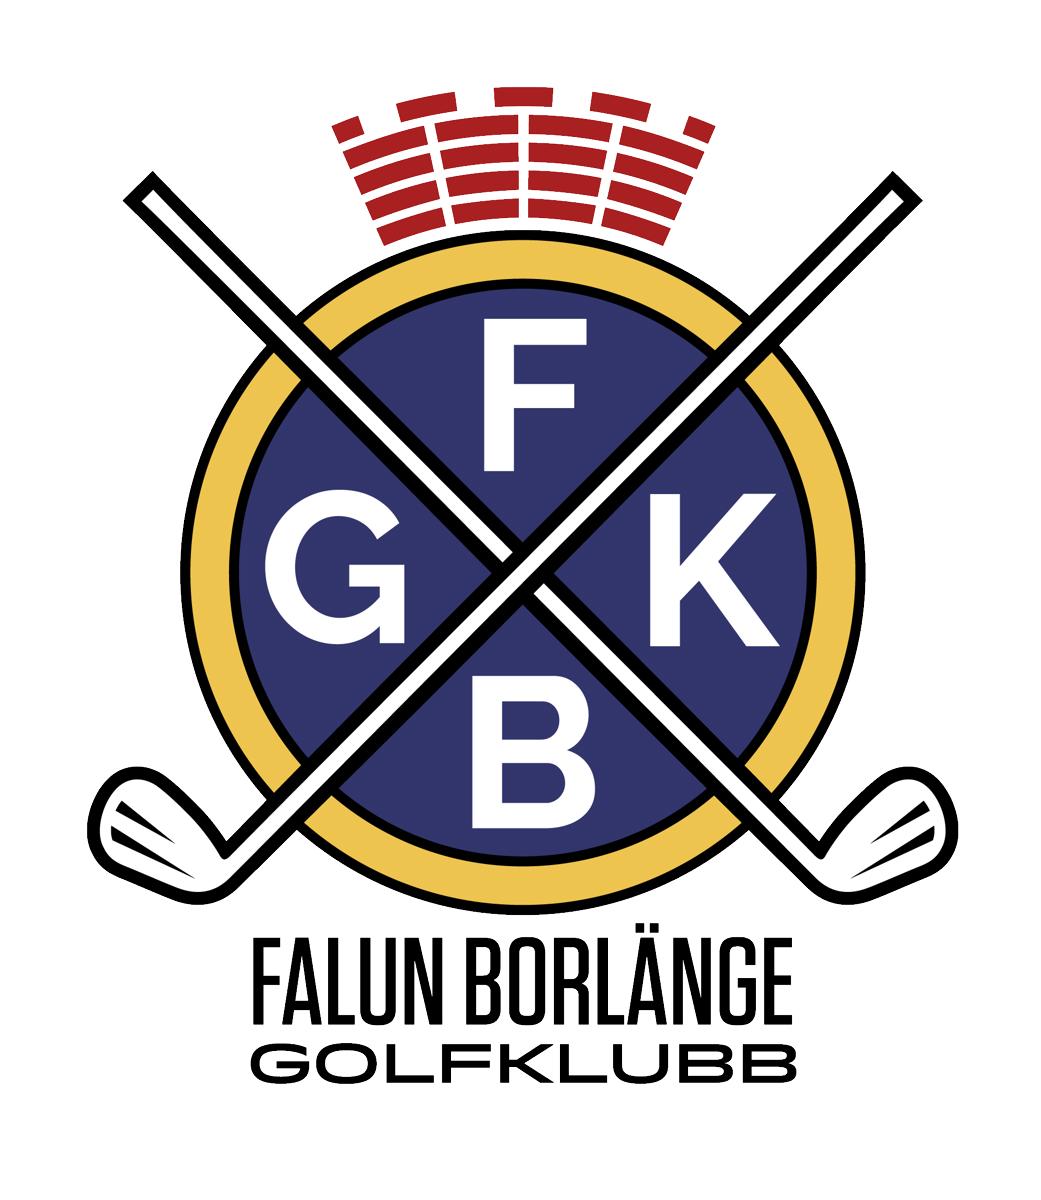 Falun Borlänge Golfklubb AB